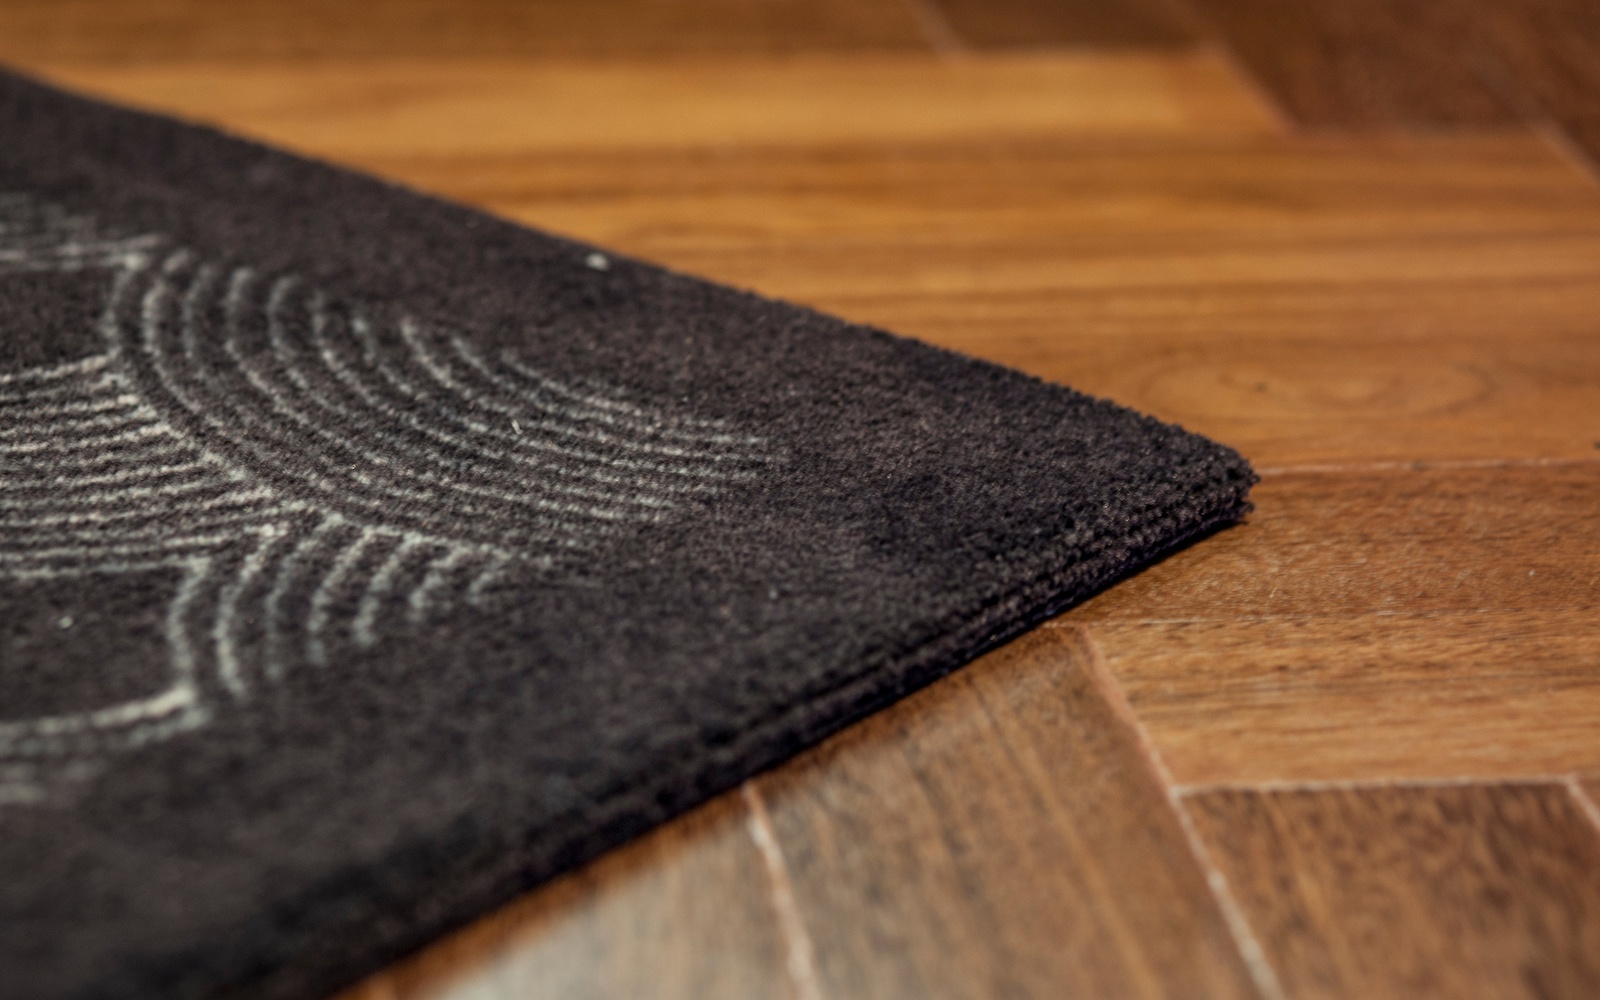 Hotelteppich: Ob angepasster Teppich als Statement im Raum oder den ganzen Boden bedeckend